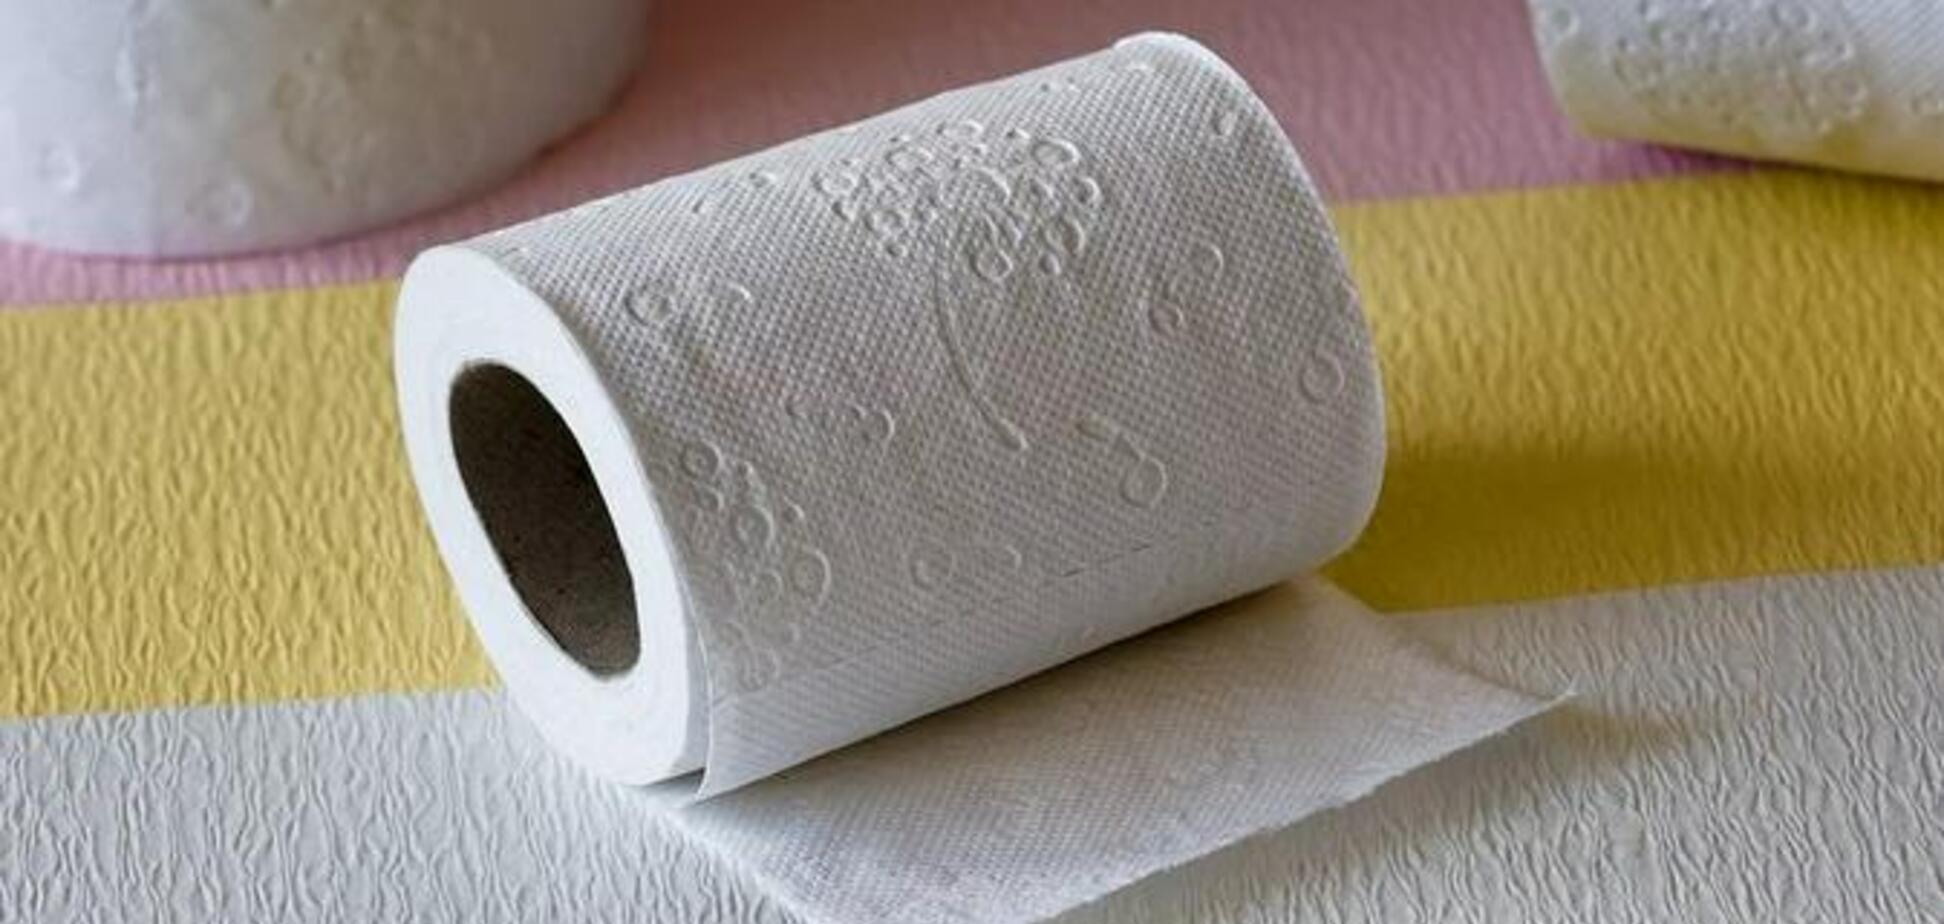 В Германии заканчивается туалетная бумага: производители бьют тревогу